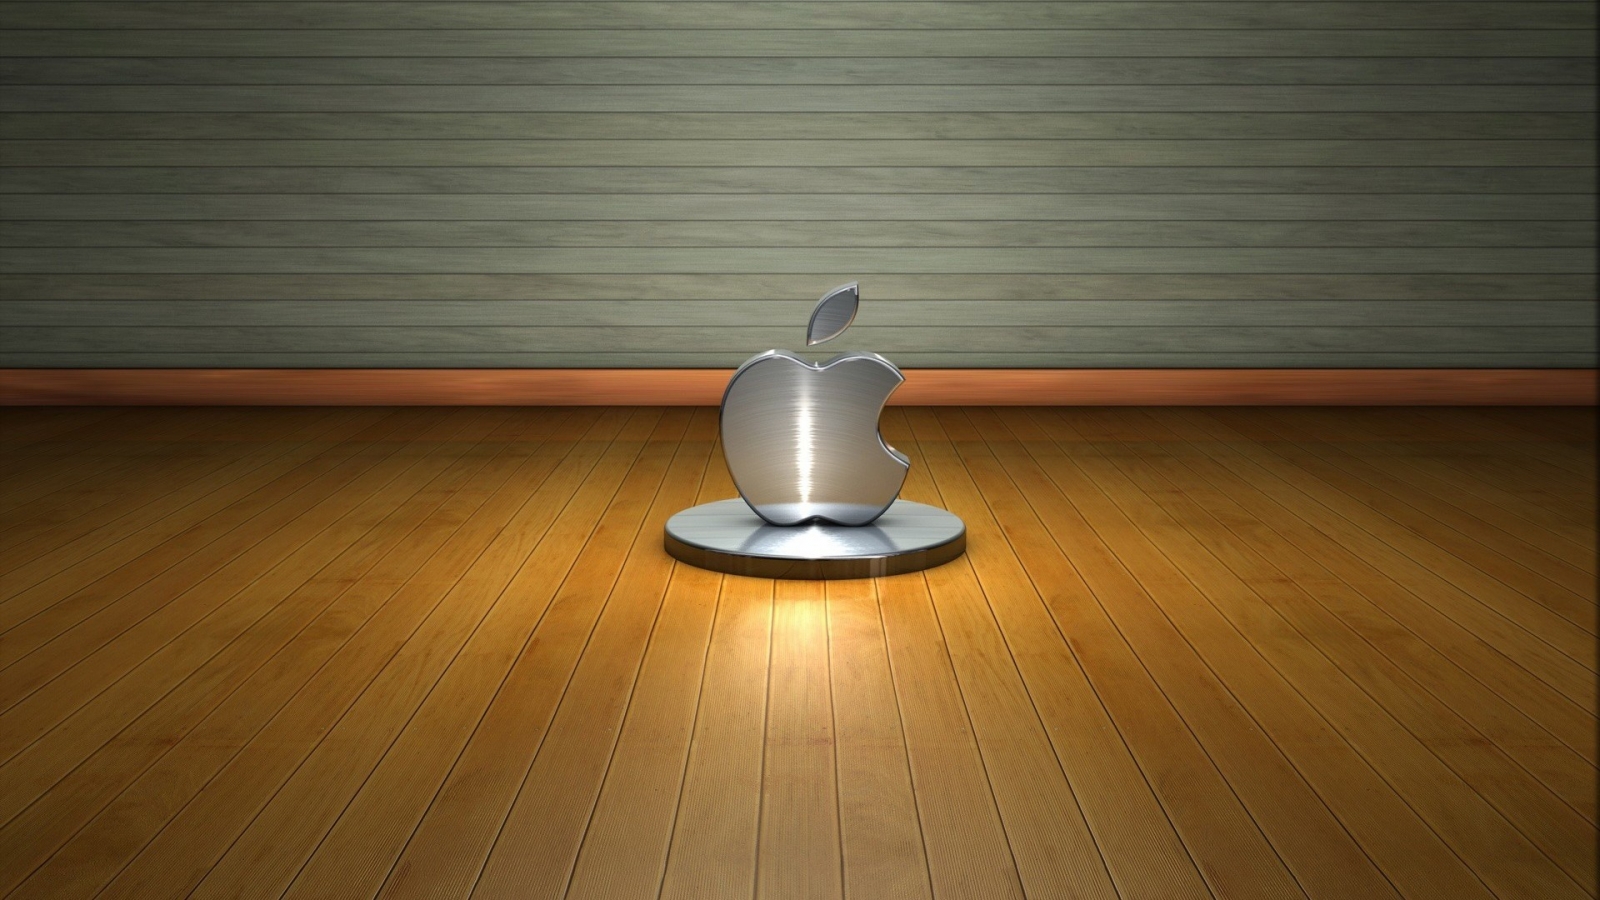 3D Apple Logo for 1600 x 900 HDTV resolution